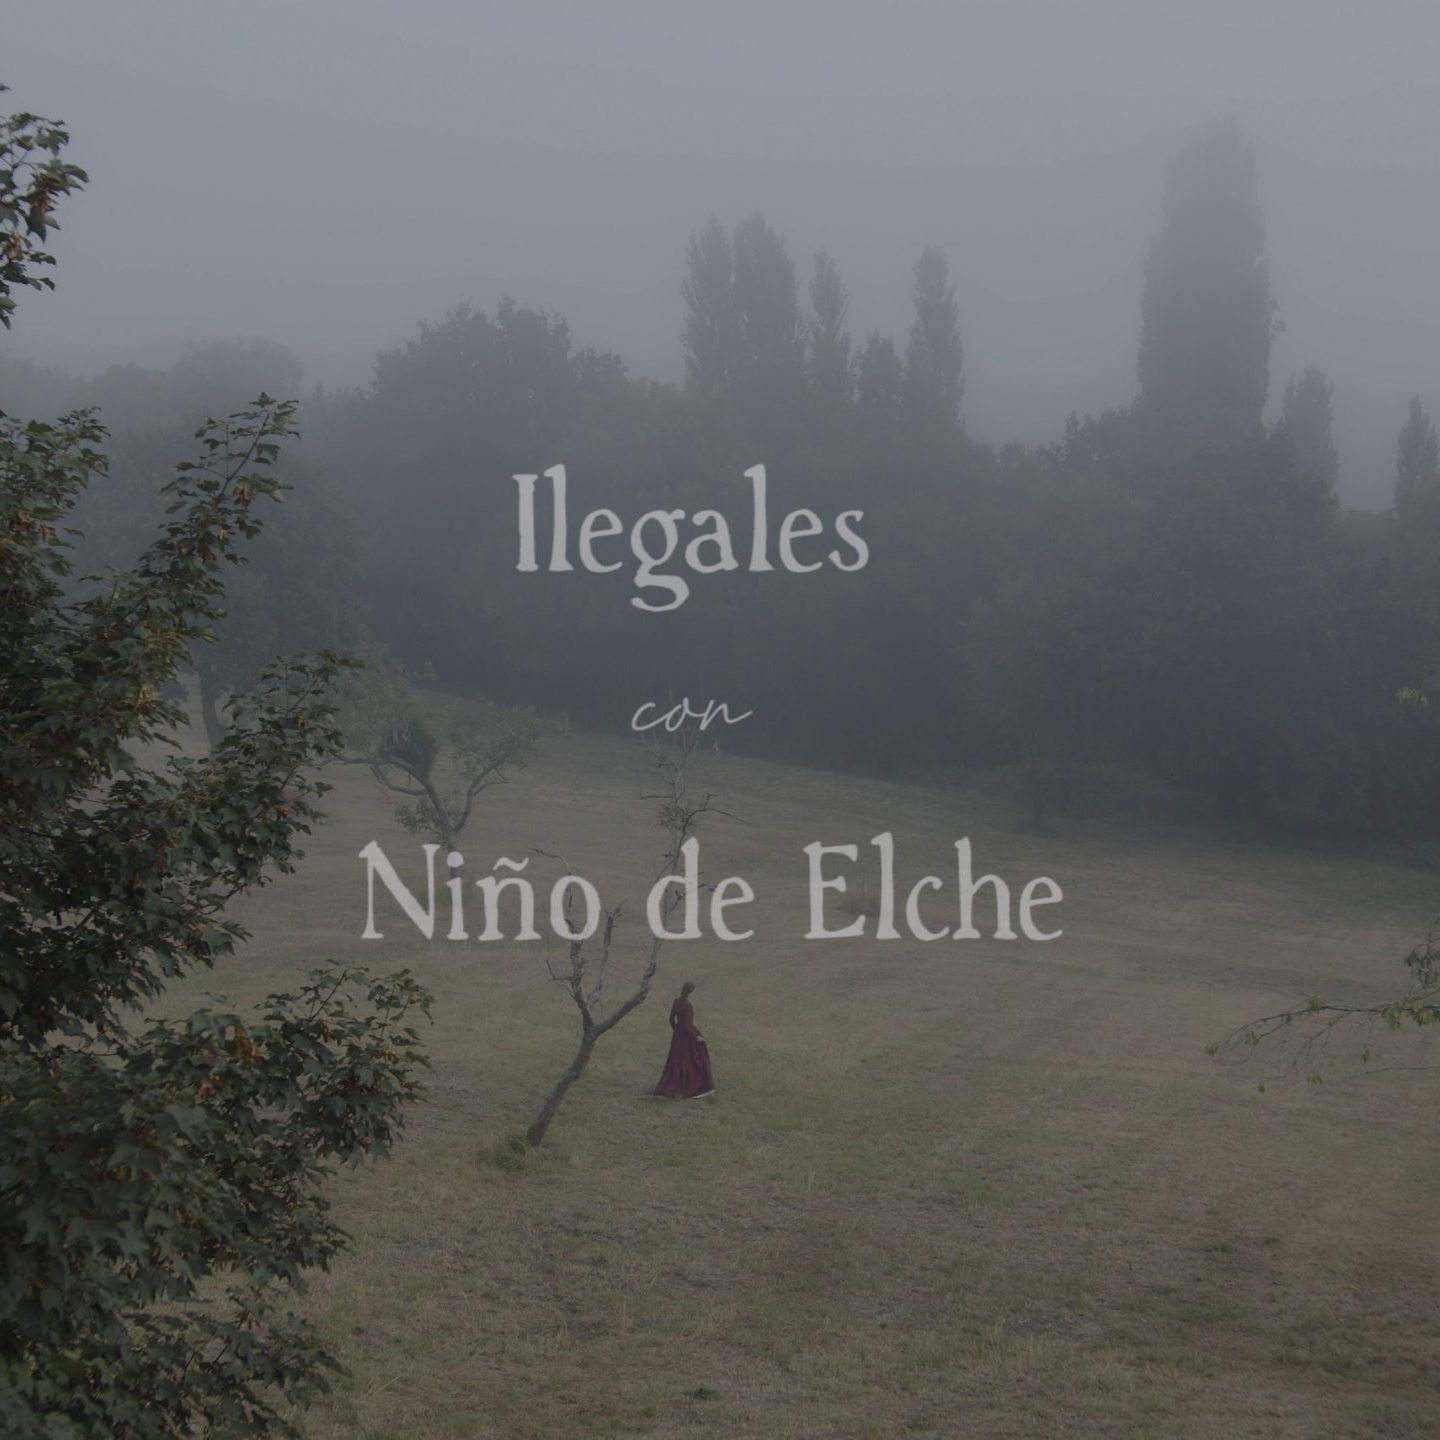 Ilegales con Niño de Elche "Muñequita de porcelana", nuevo videoclip